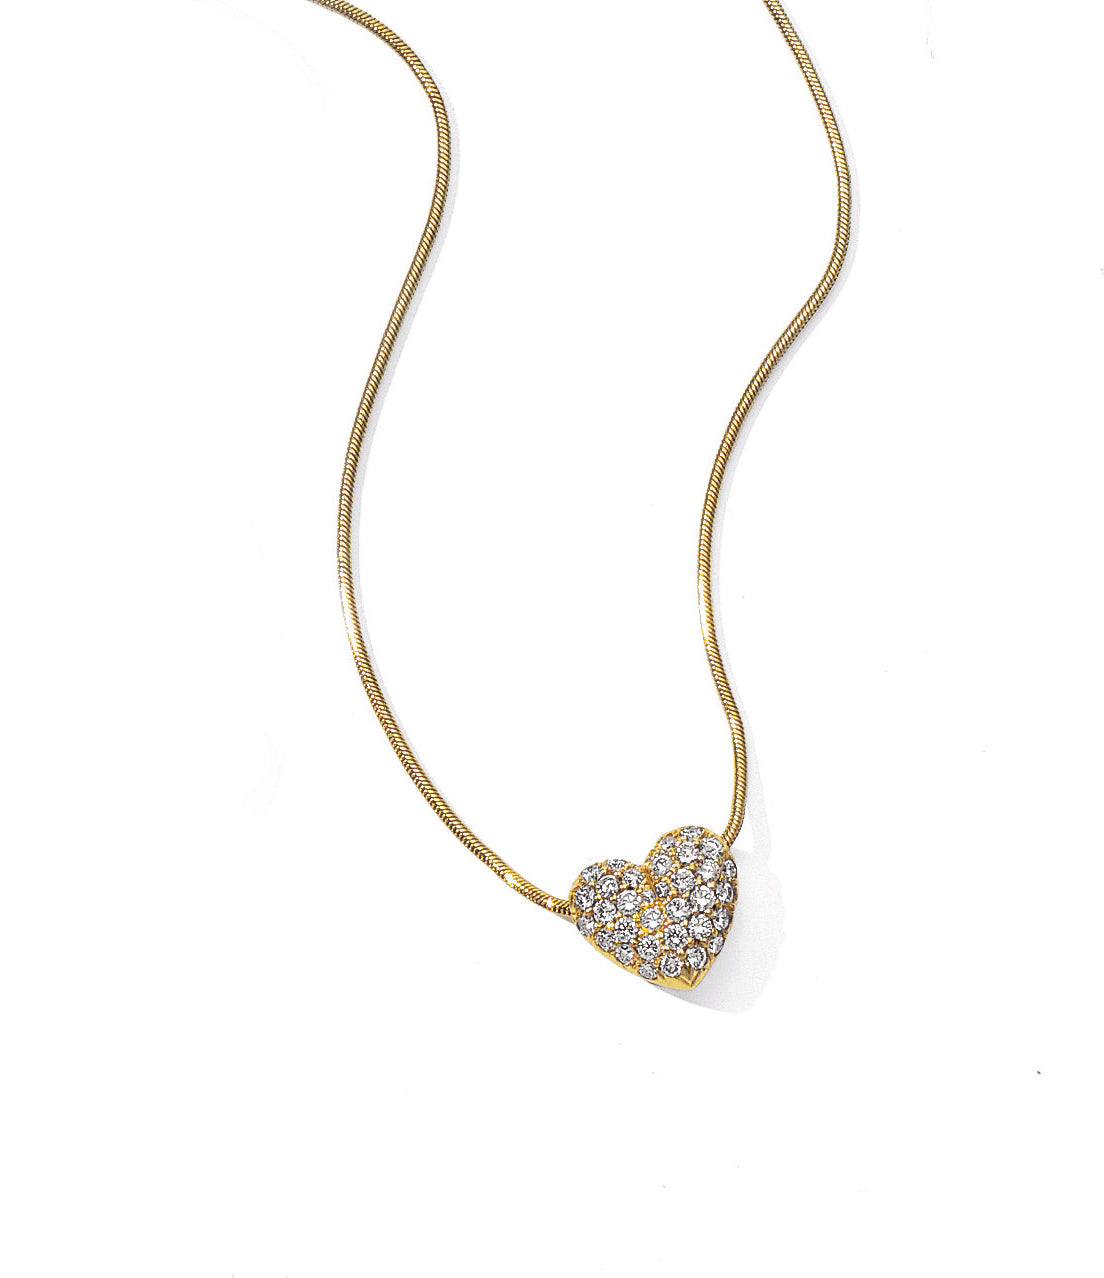 Corazones Diamond Necklace 18Karat 35 Diamonds 0.75cts TW